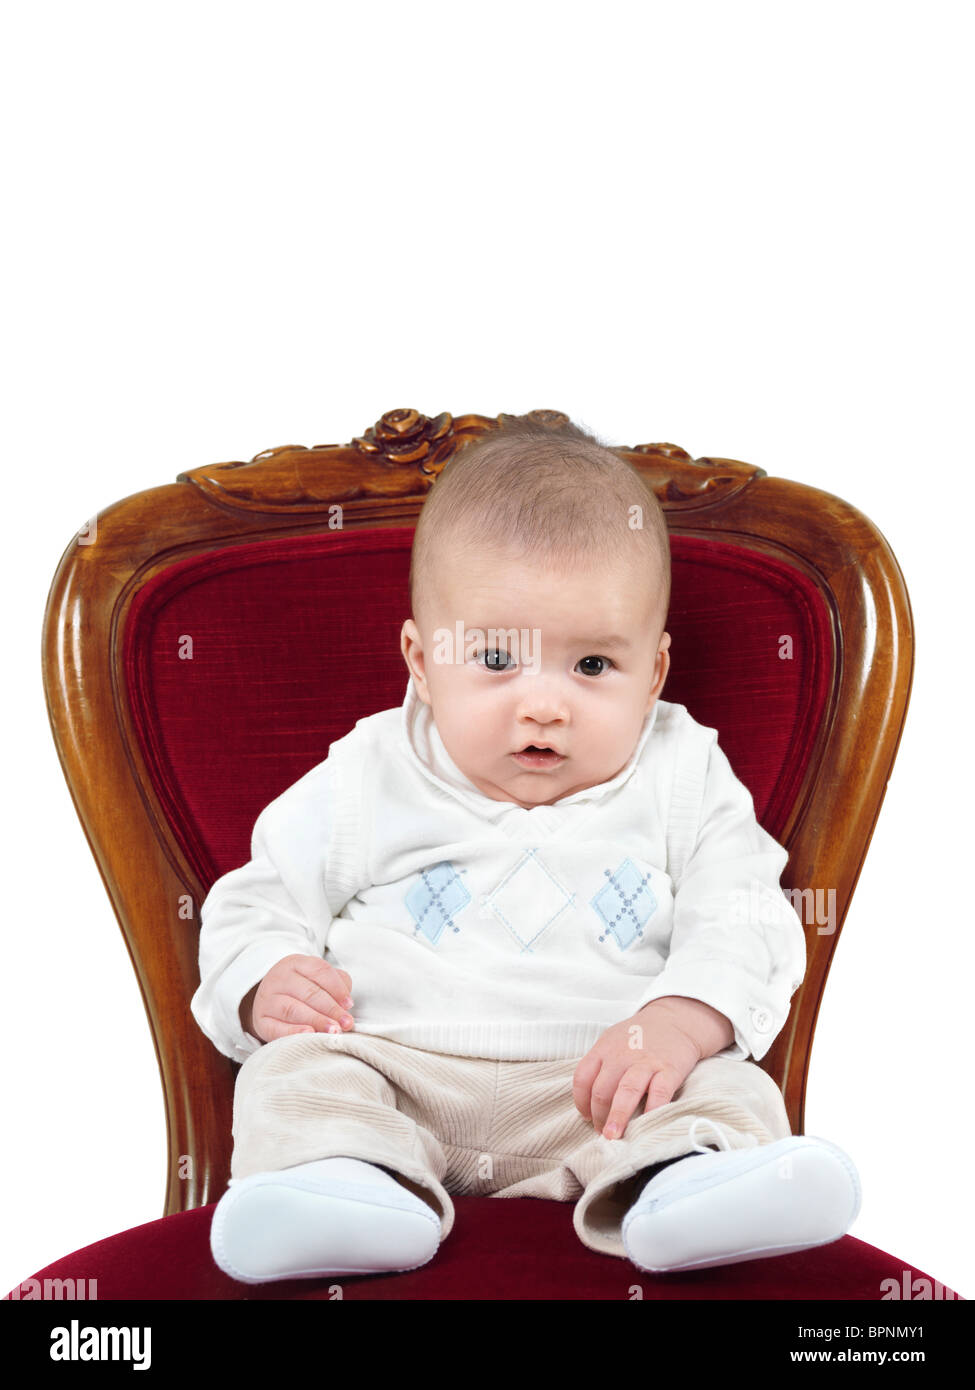 Photo humoristique d'un bébé de quatre mois garçon assis sur une chaise comme un roi sur un trône Banque D'Images